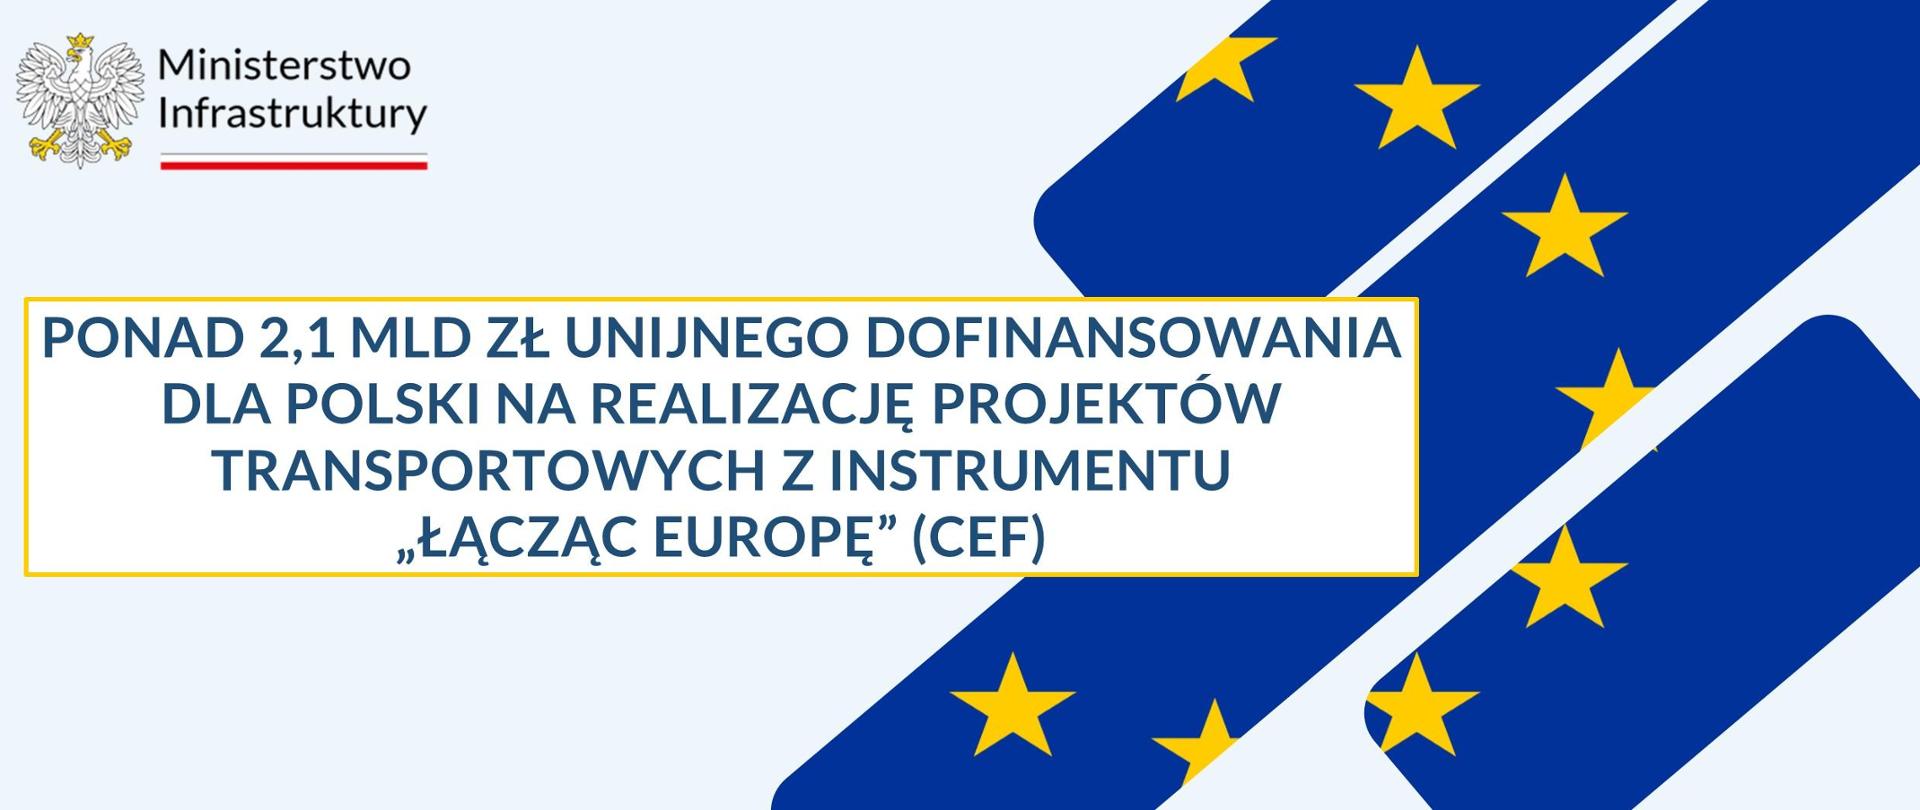 Kolejny sukces Polski w konkursie CEF. Ponad 2,1 mld zł unijnego dofinansowania na realizację projektów transportowych